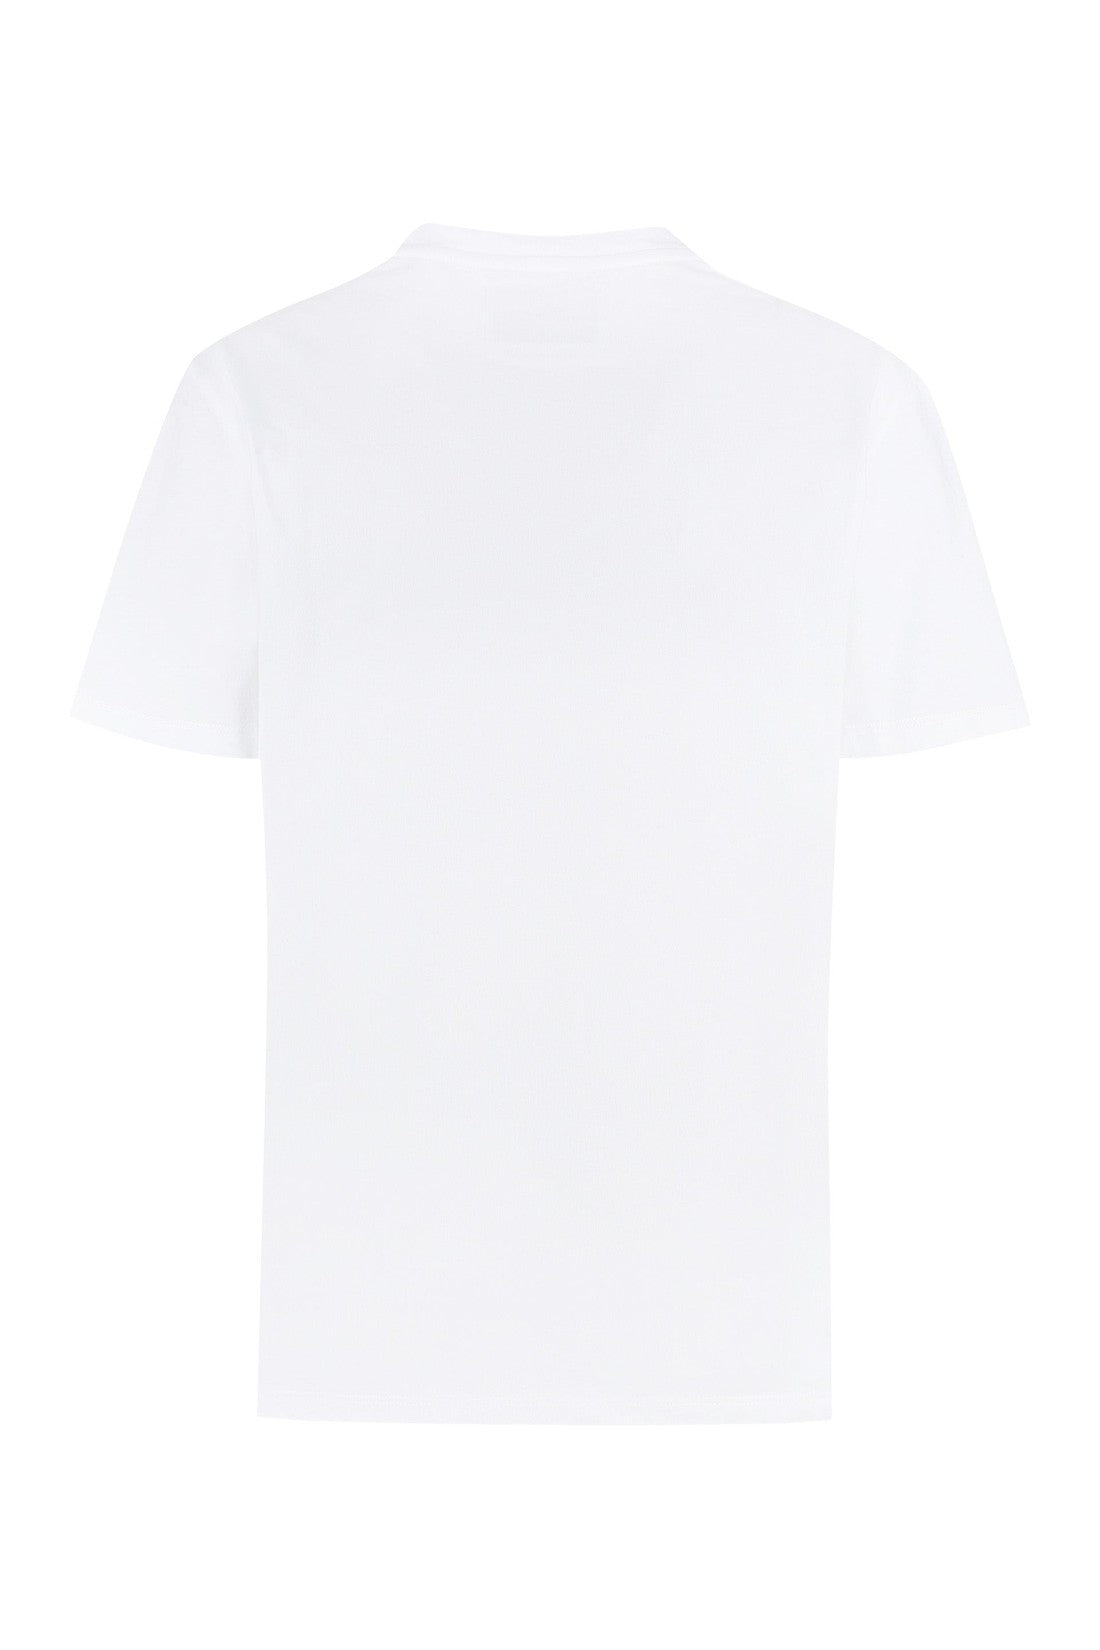 Golden Goose-OUTLET-SALE-Cotton crew-neck T-shirt-ARCHIVIST